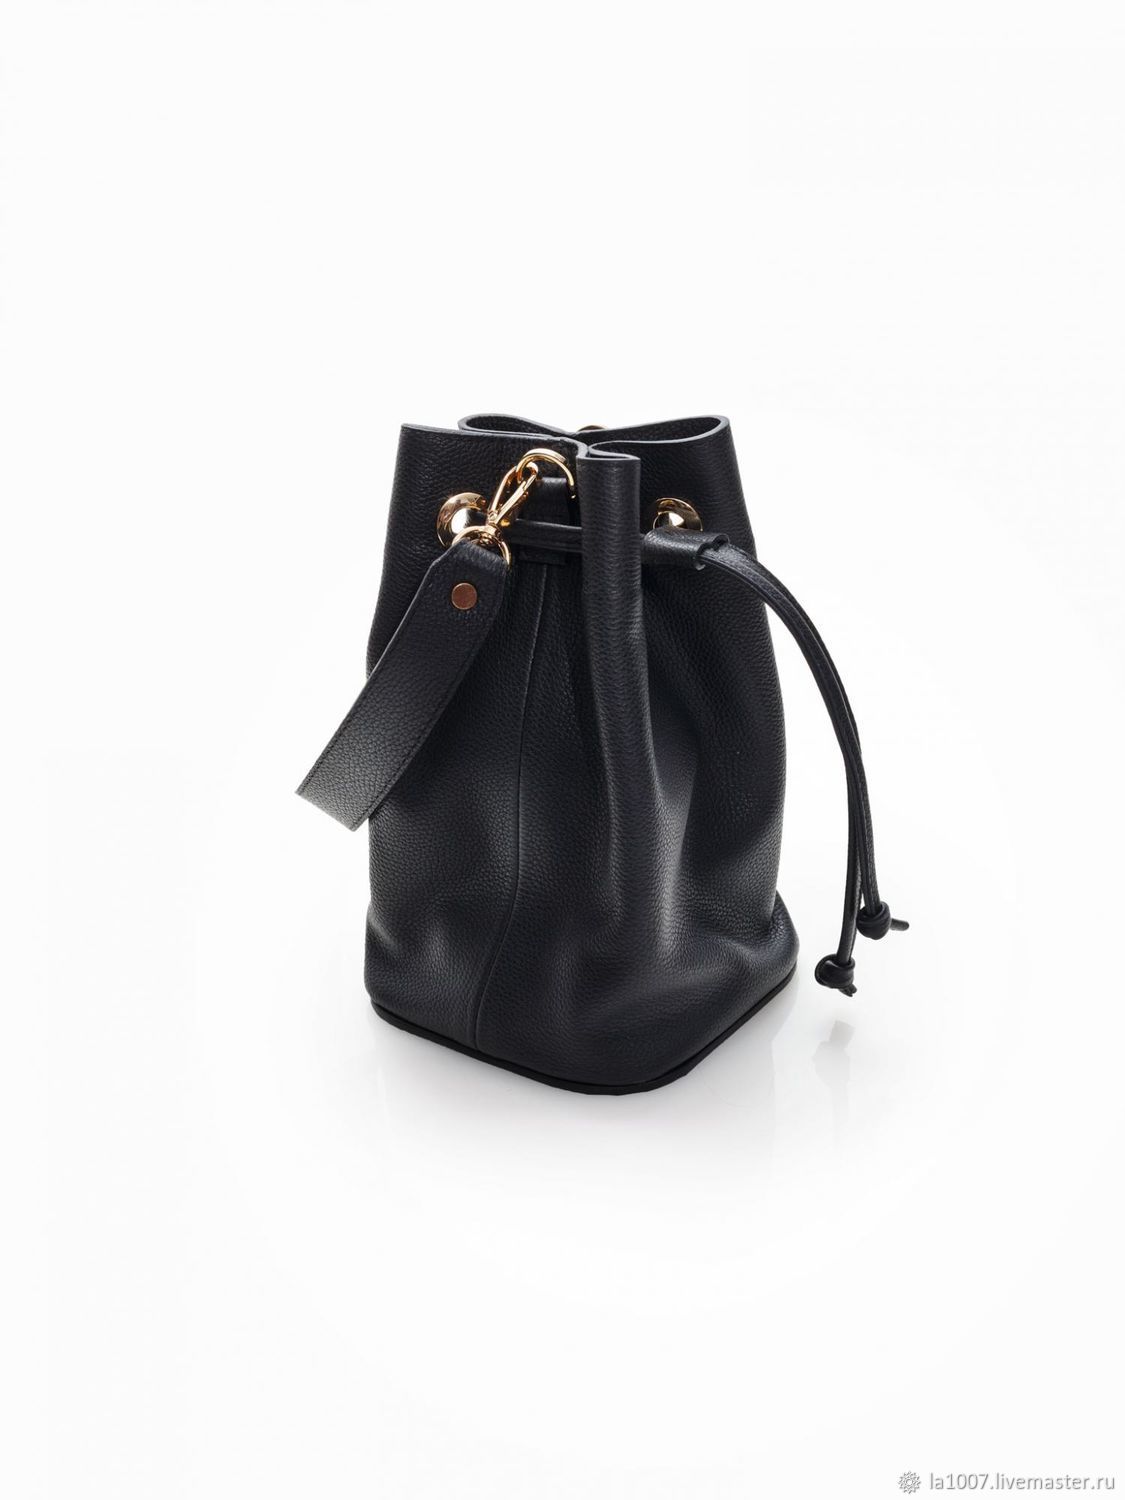 Mini Bellport Bucket Bag Polo Ralph Lauren